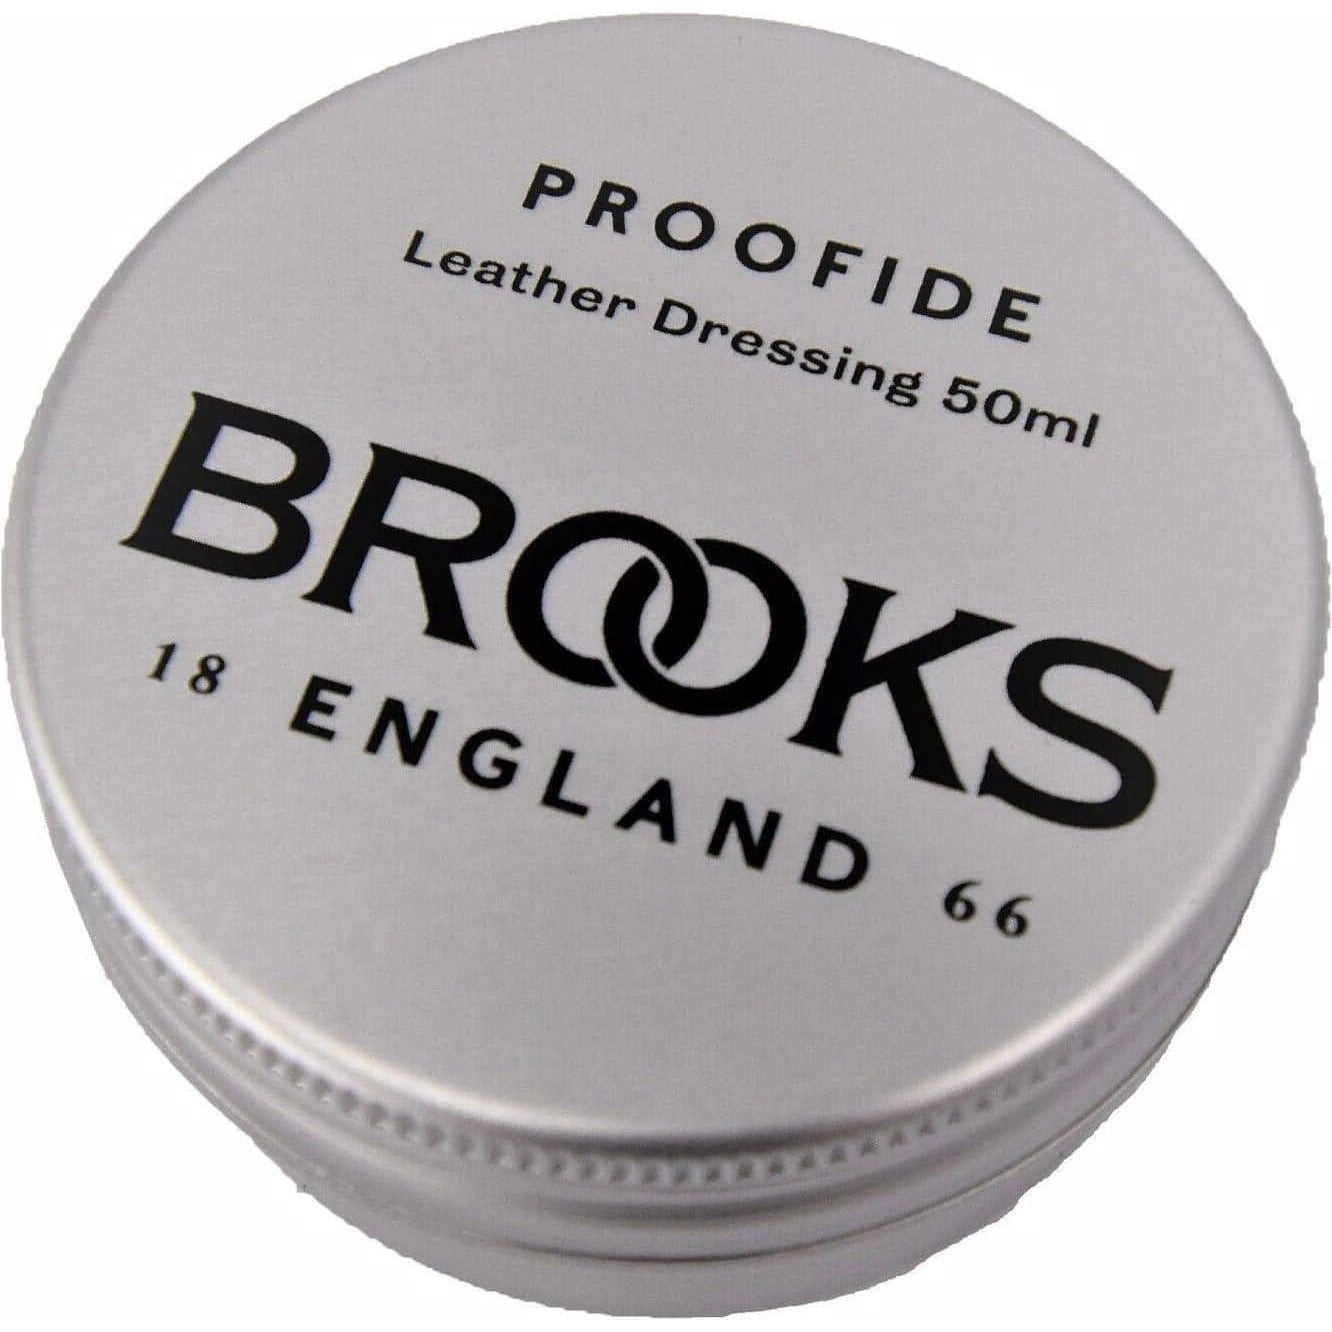 Brooks England Proofide  Ama0400A0L